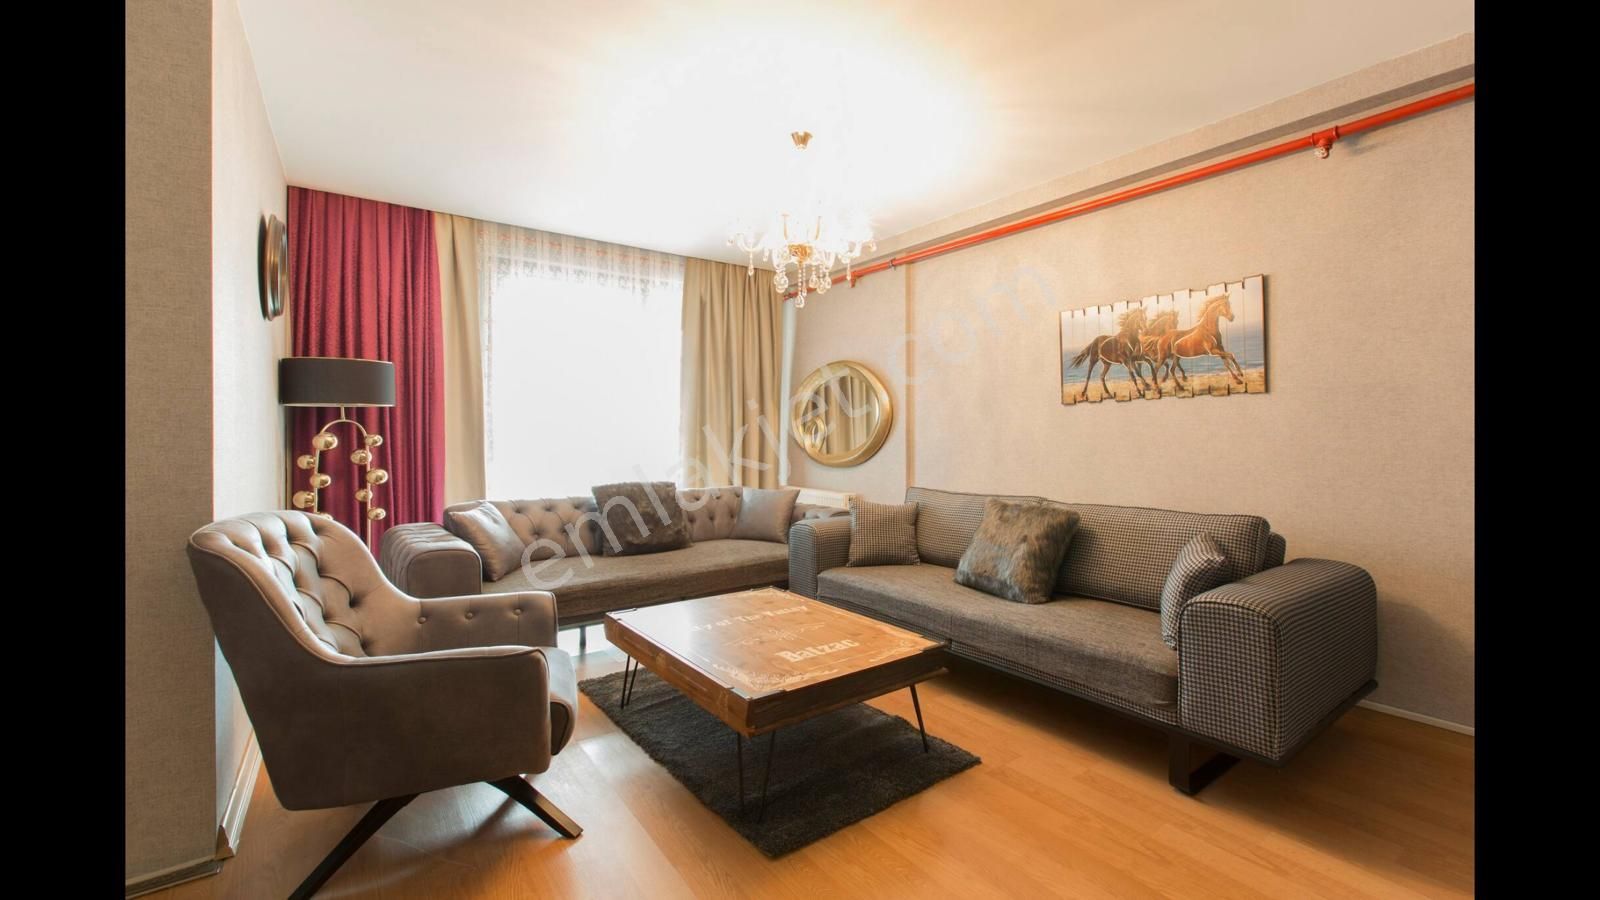 Şişli İnönü Kiralık Residence  Şehir manzaralı balkonlu dblx residence daire (3+1) Dublex with full furniture 